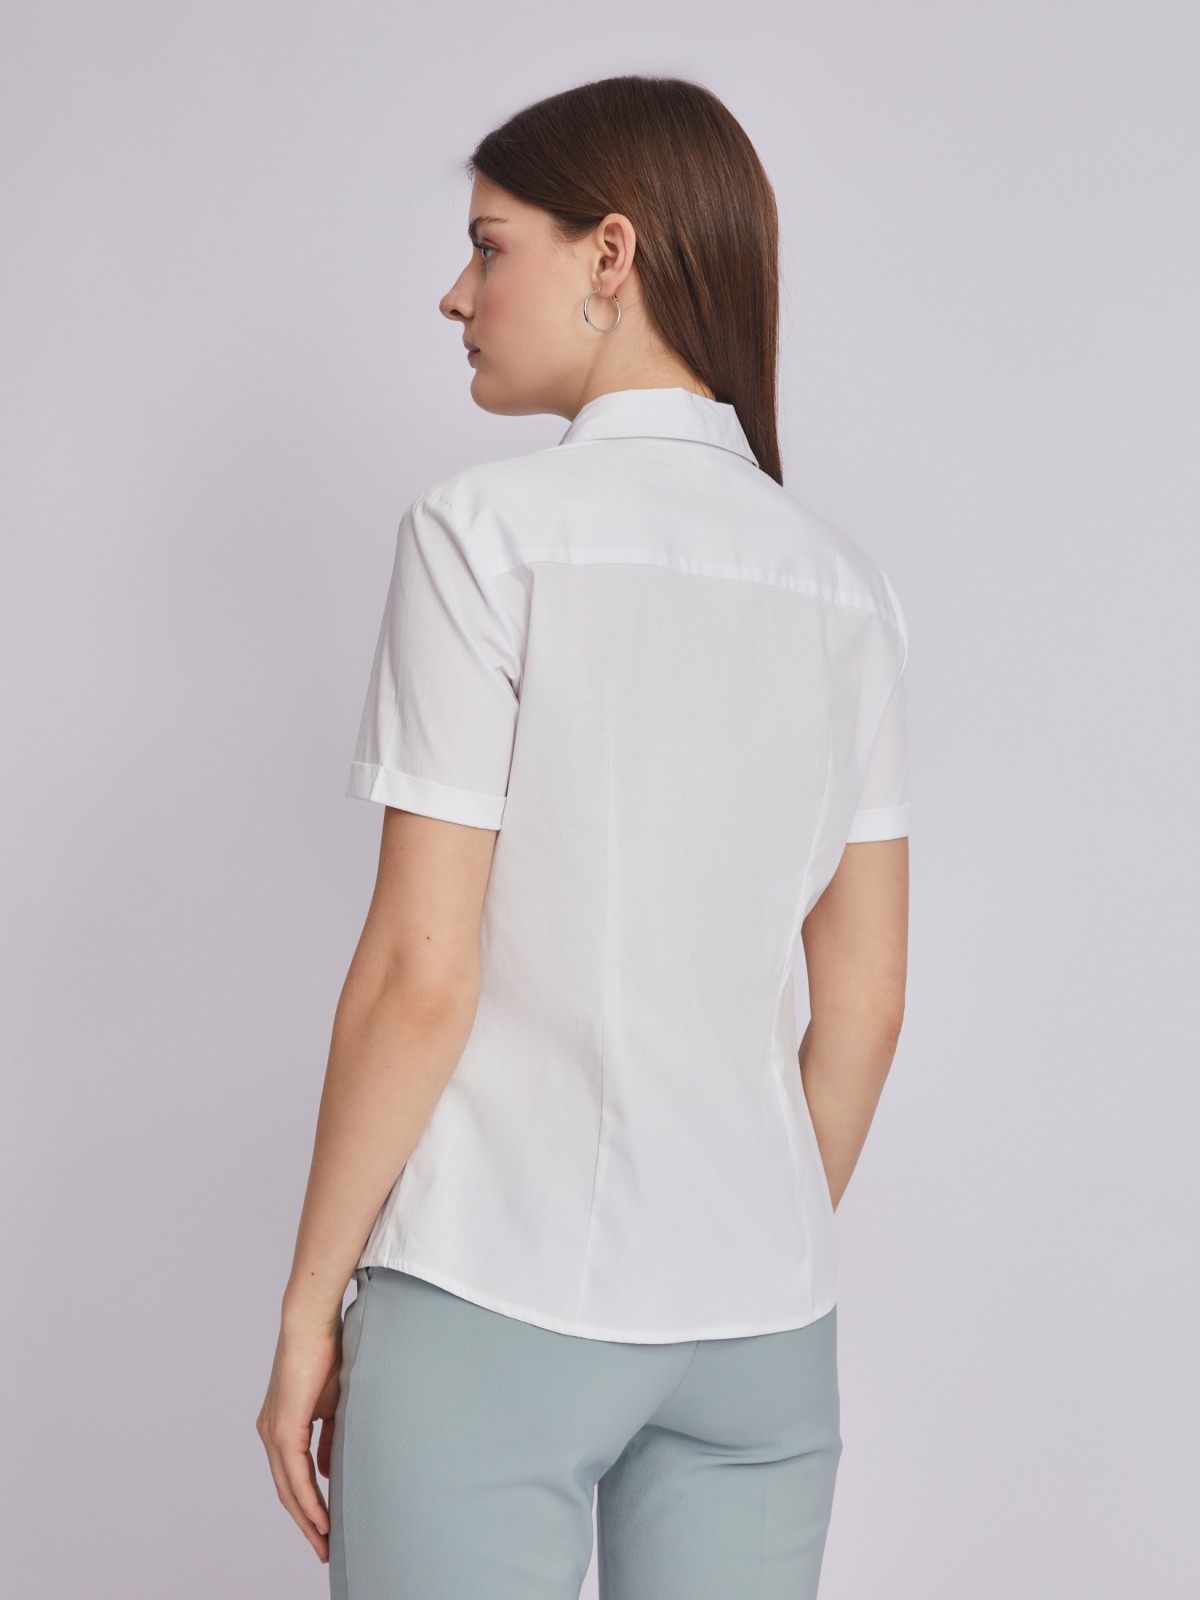 Рубашка с коротким рукавом zolla 223211259072, цвет белый, размер XS - фото 6